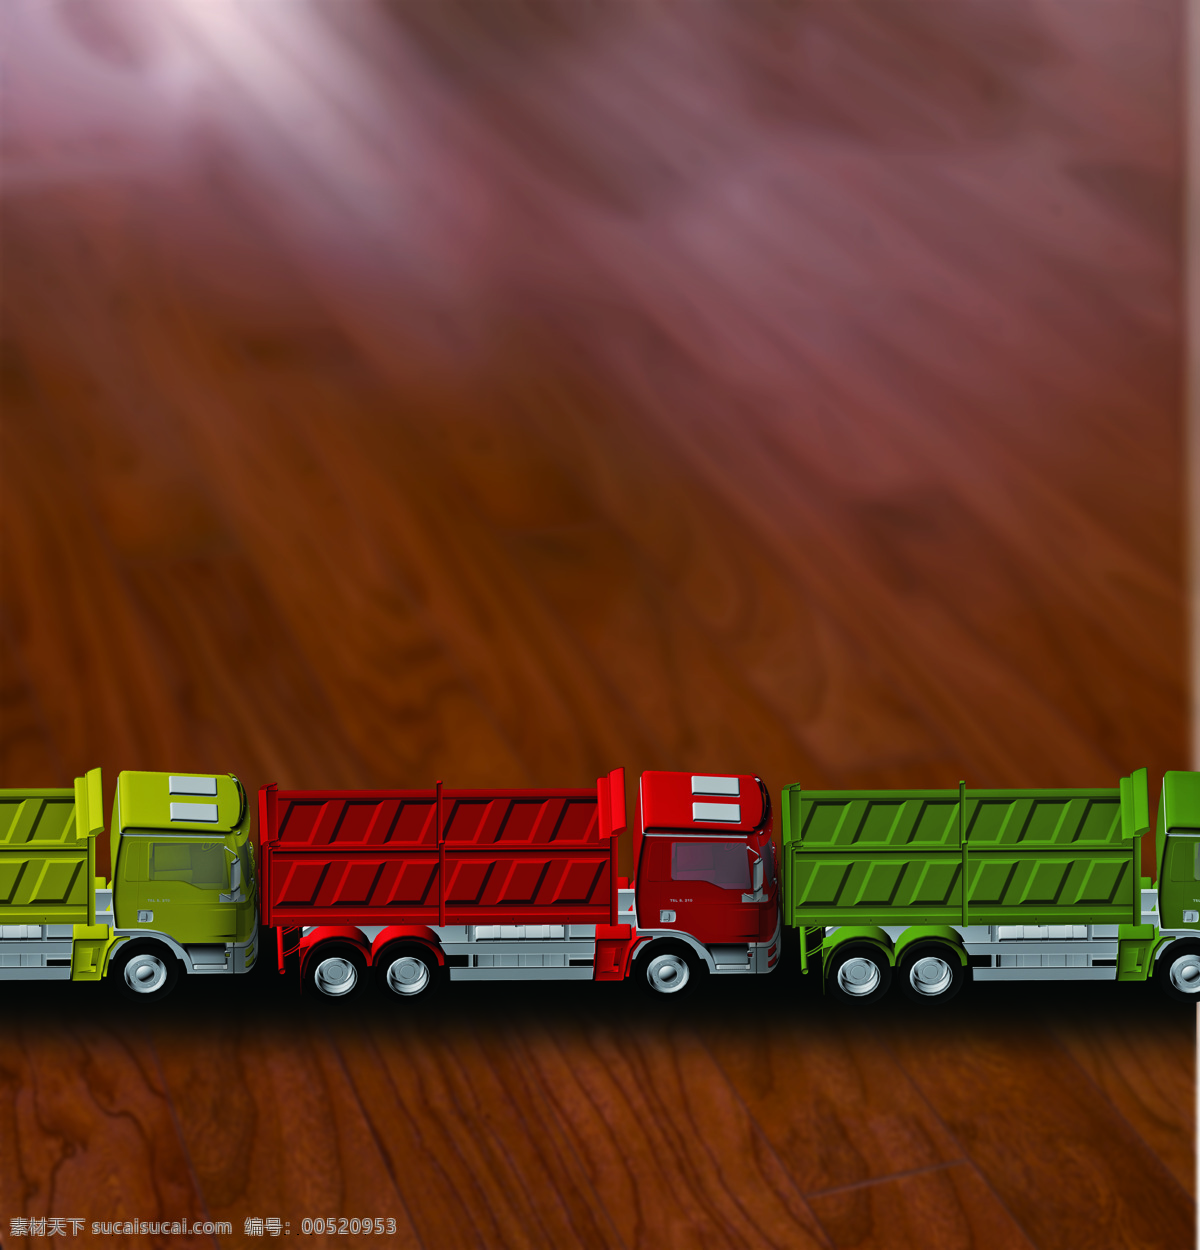 卡车 交通工具 物流 现代科技 运输 重卡 卡车设计素材 卡车模板下载 卡车队 封面用图 psd源文件